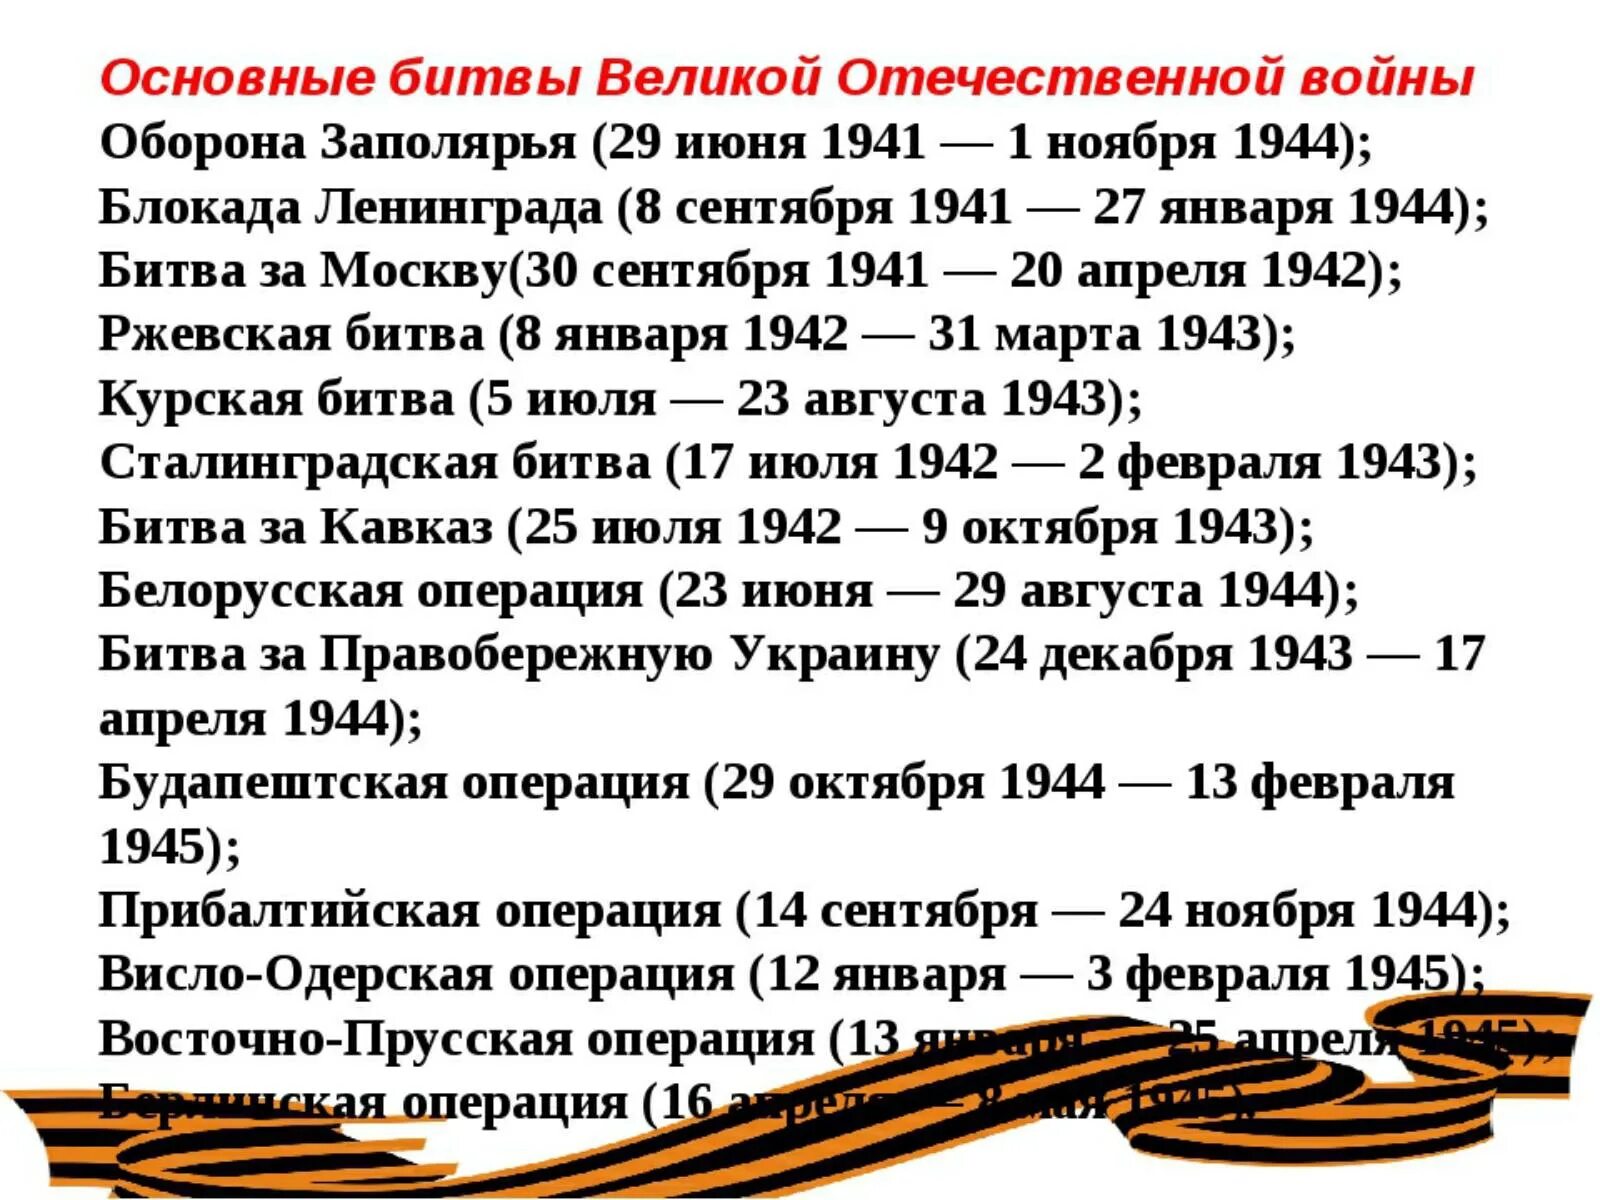 История сражений вов. Важнейшие битвы ВОВ даты. Даты крупных сражений Великой Отечественной войны. Даты Великой Отечественной войны основные 1945.